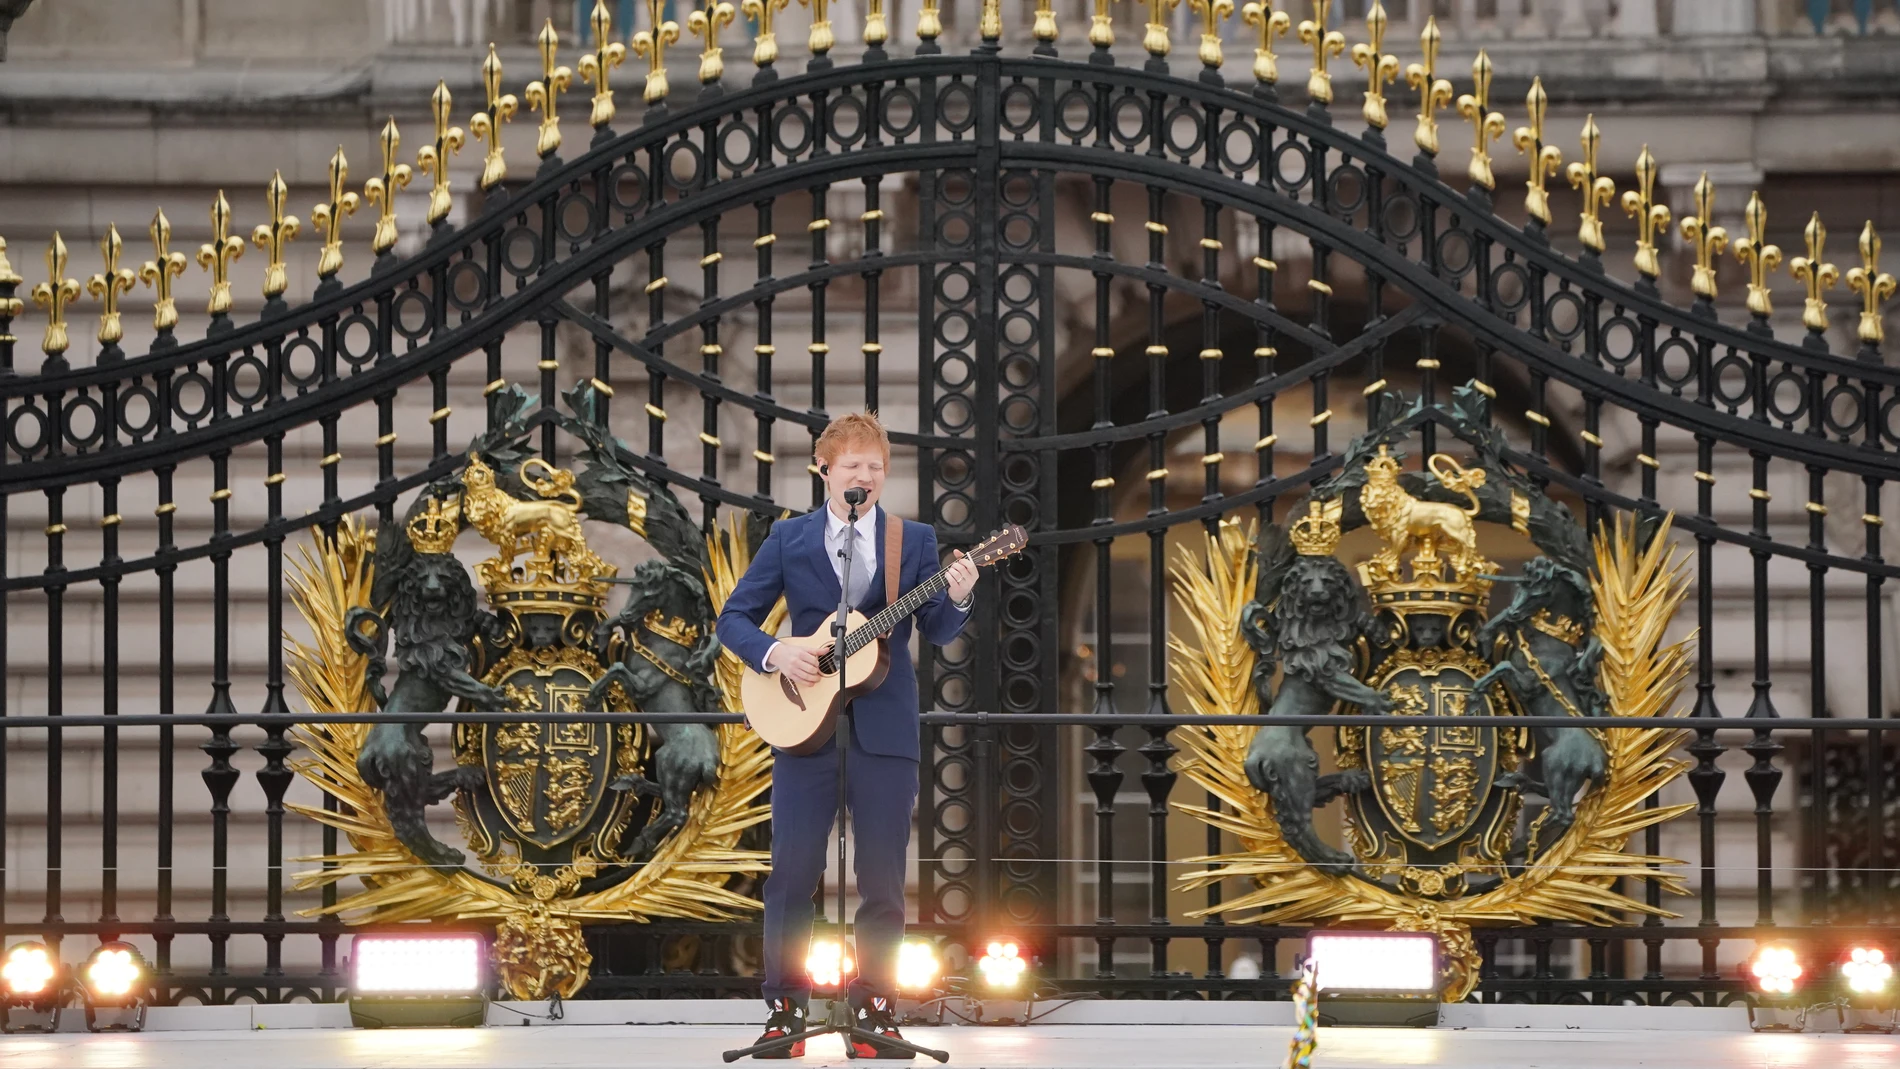 Ed Sheeran fue uno de los artistas que actuó en la celebración de los 70 años de la Reina Isabel II en el trono británico. Para la ocasión, eligió la balada romántica Perfect